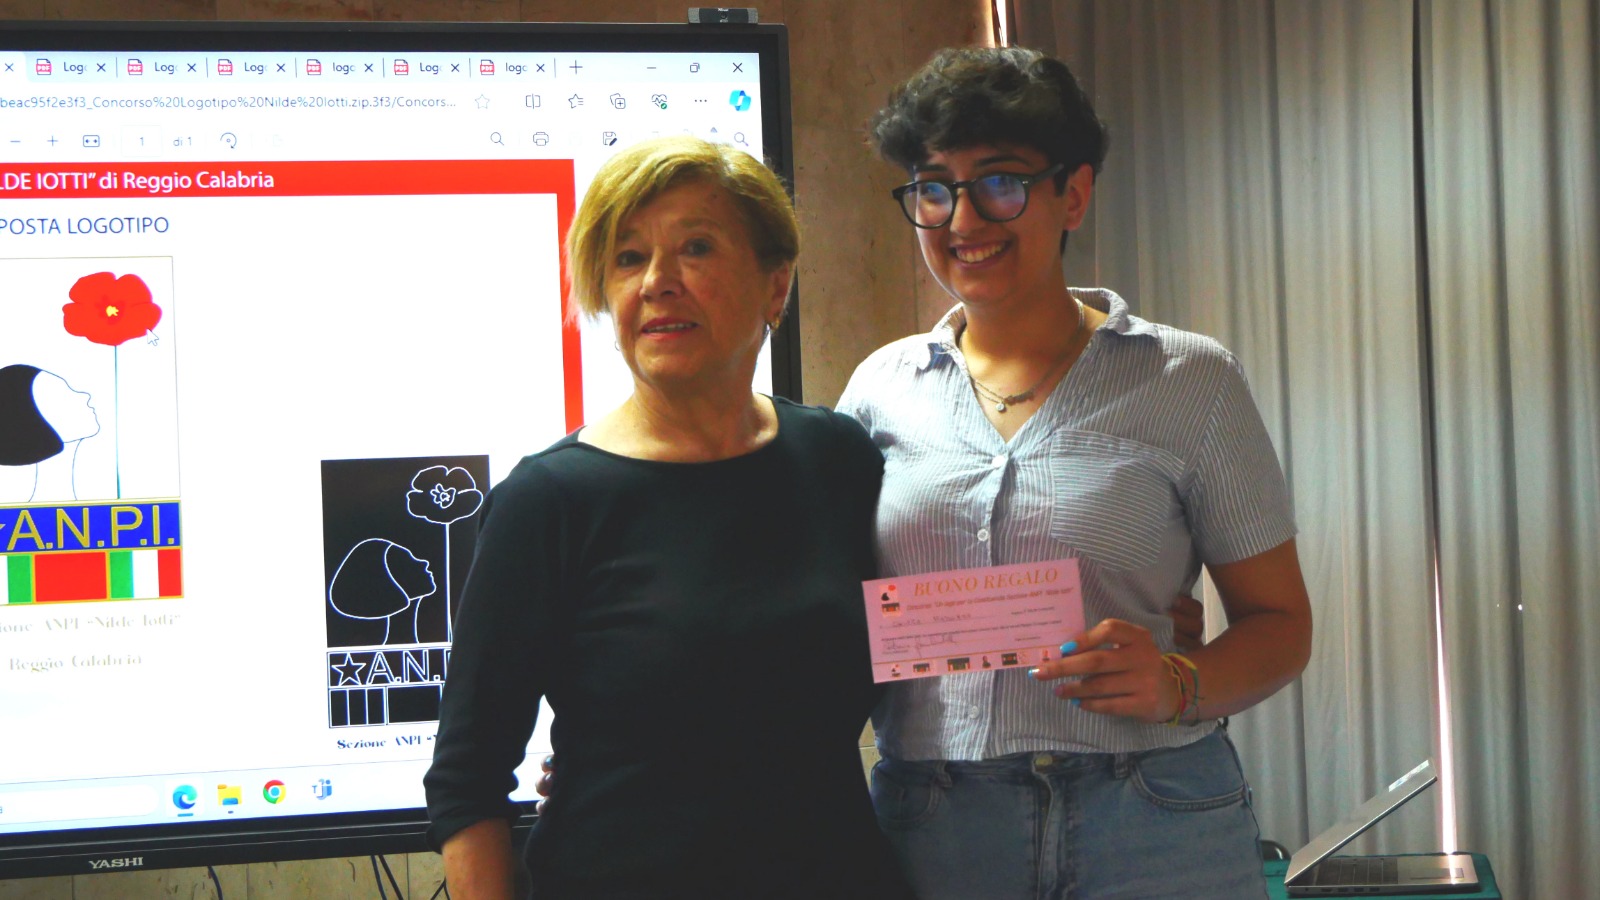 Scelto il logo per la sezione Anpi “Nilde Iotti” di Reggio Calabria: vince Chiara Madonna